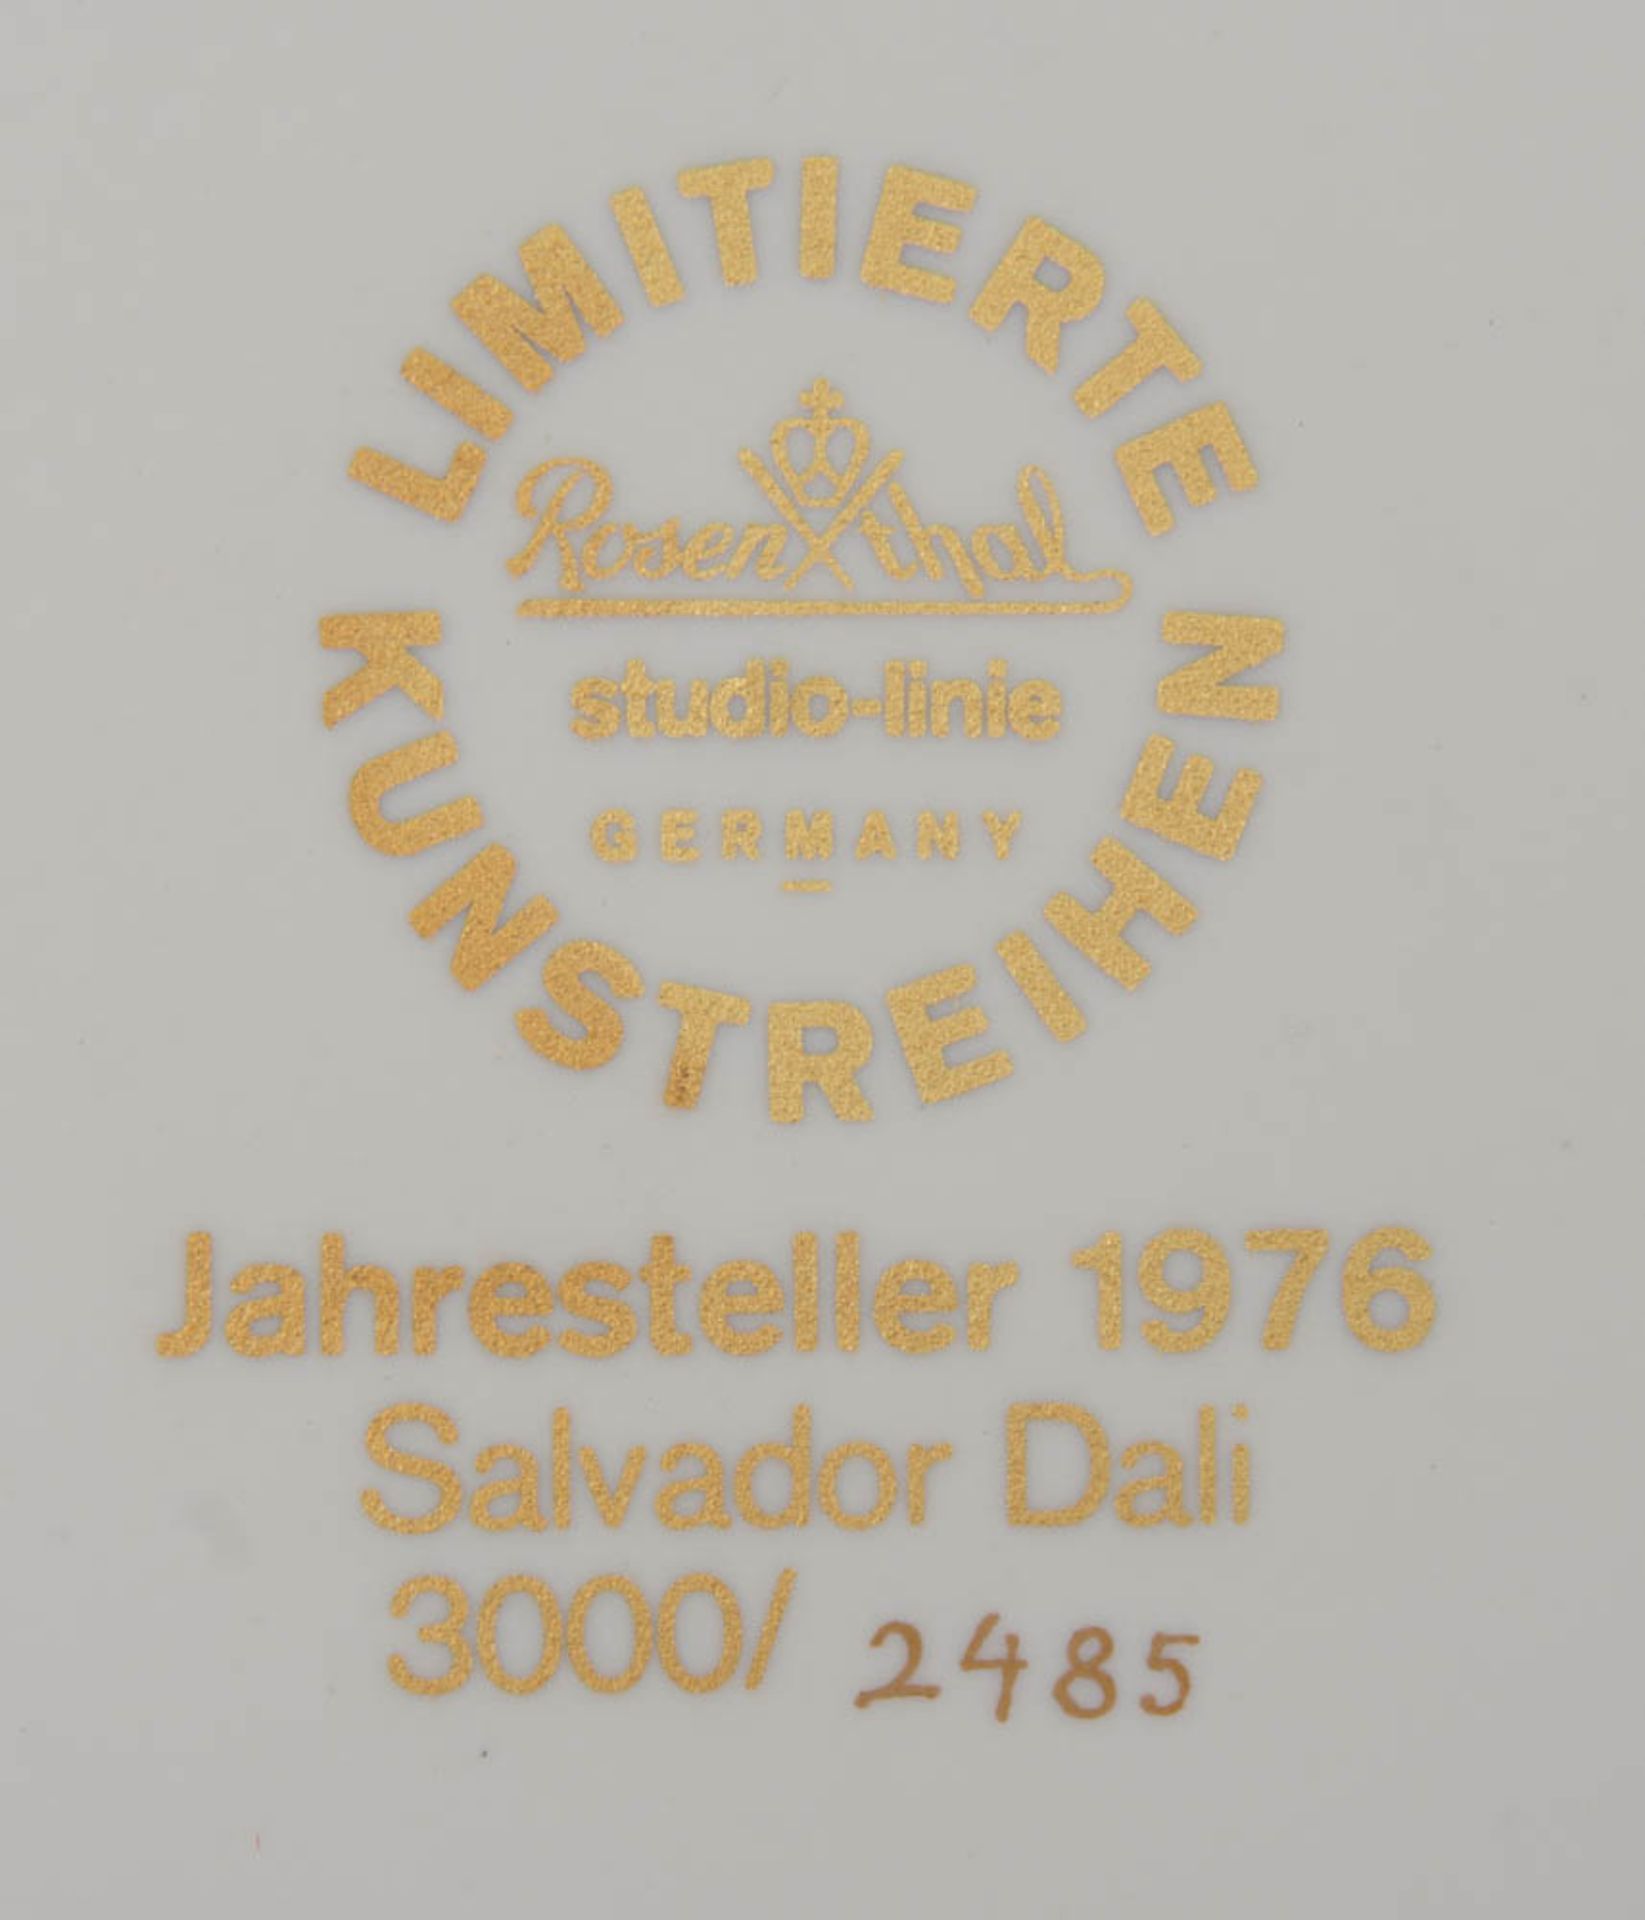 JAHRESTELLER DALI 1976, Rosenthal Studion Line.Limitierte Auflage 3000/2485. Originalkarton - Bild 4 aus 6